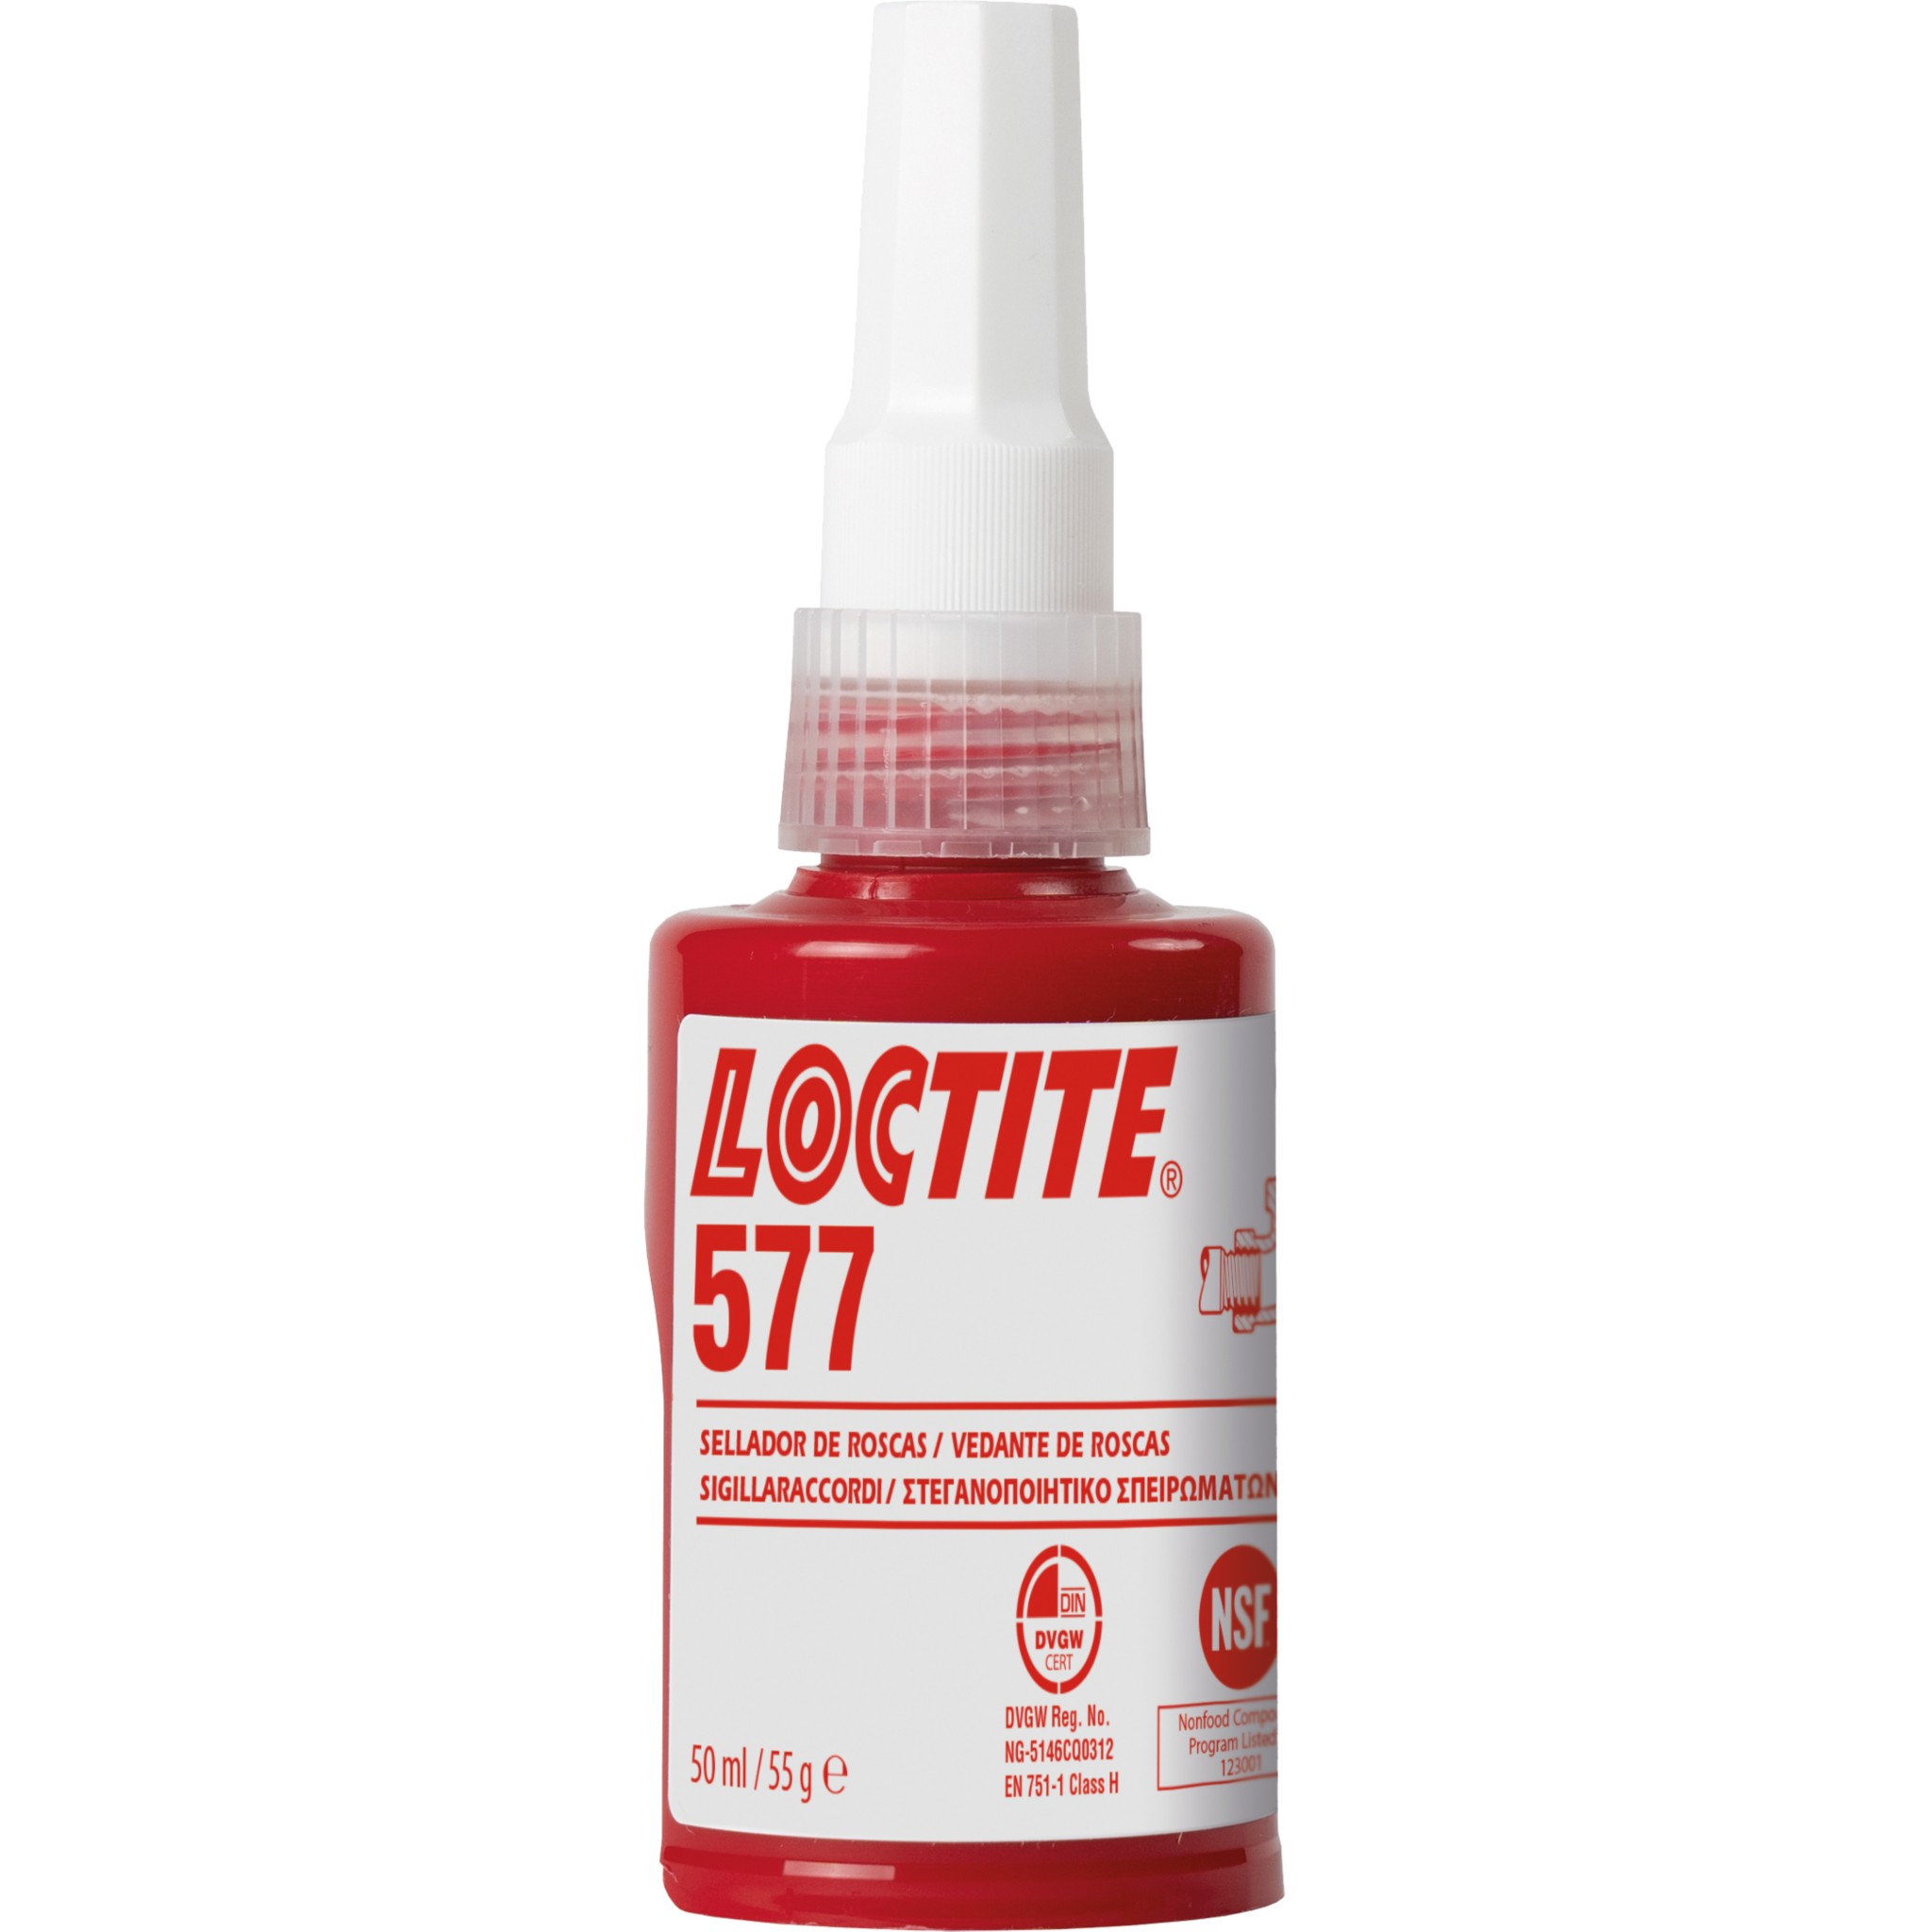 Loctite - TEFLON LIQUIDO SELLADOR ROSCAS LOCTITE c/PTFE 565, 50ml